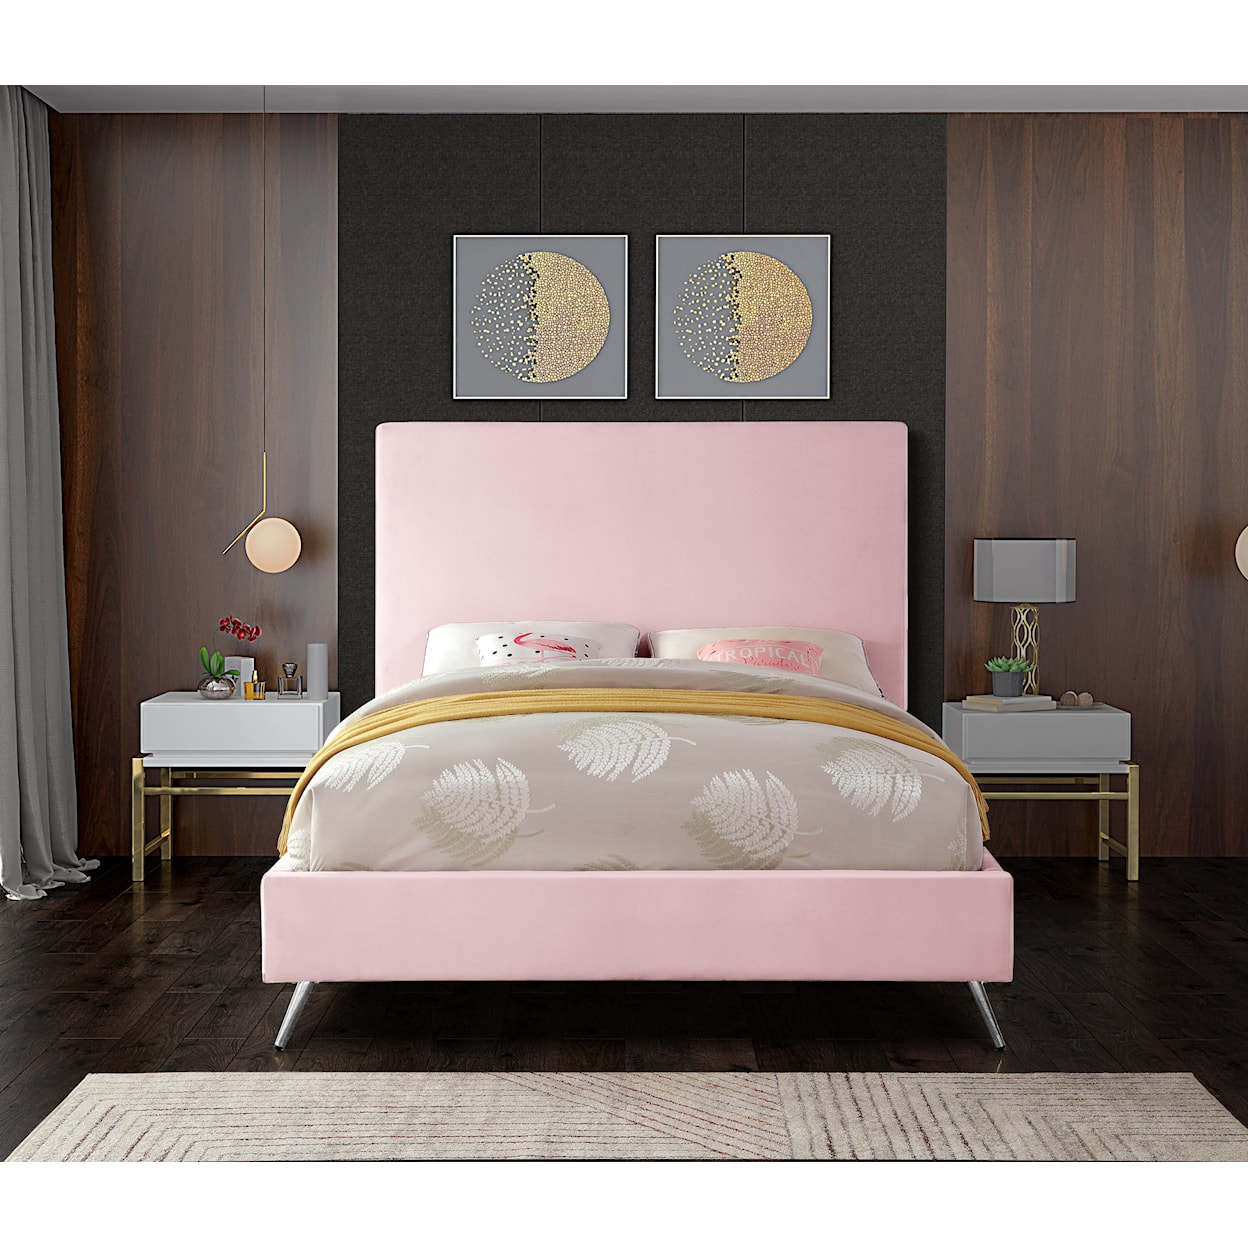 Meridian Furniture Jasmine Queen Bed